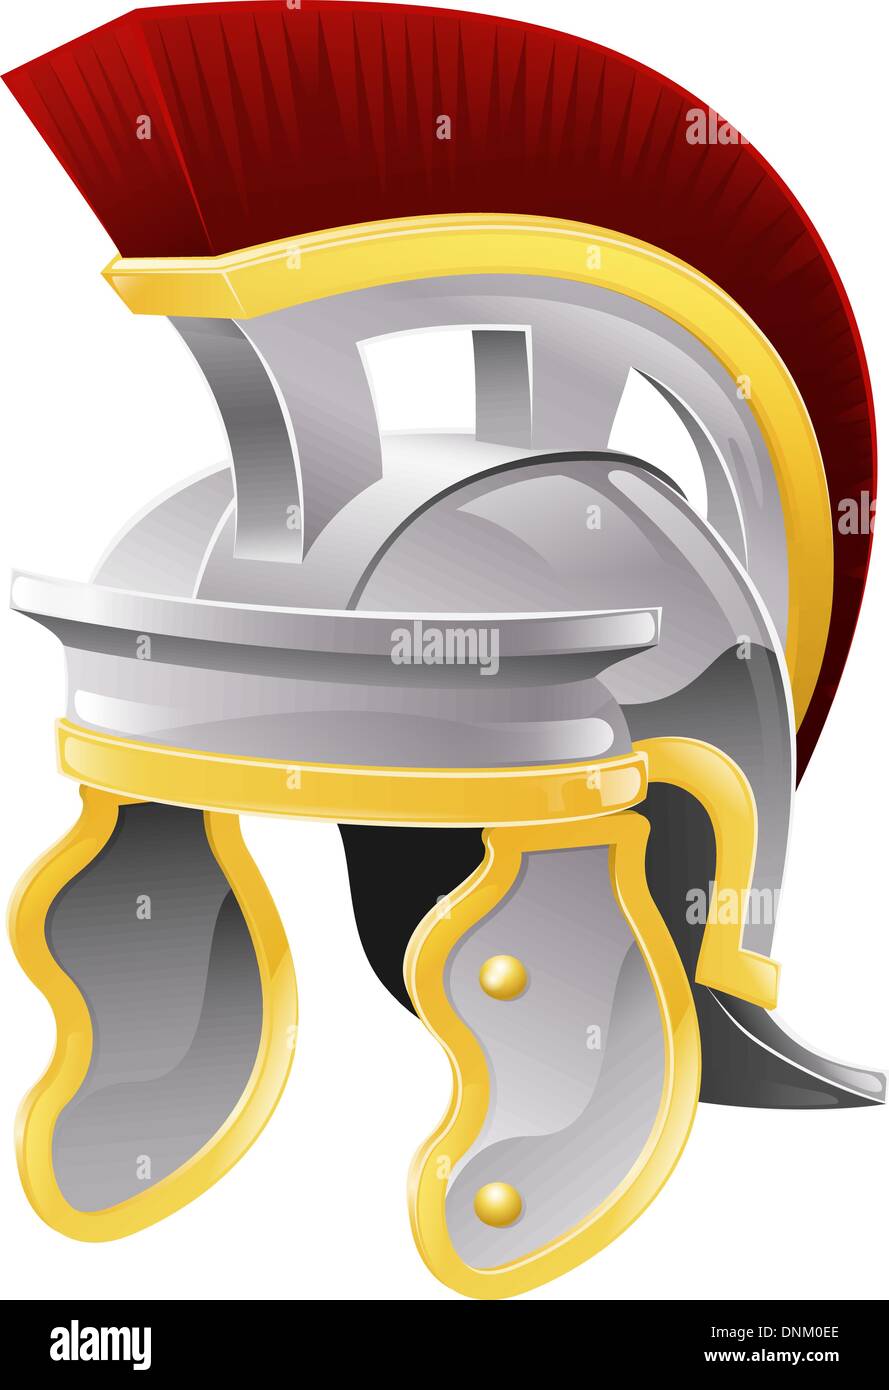 Illustration de soldat romain casque style la galea avec crête rouge Illustration de Vecteur